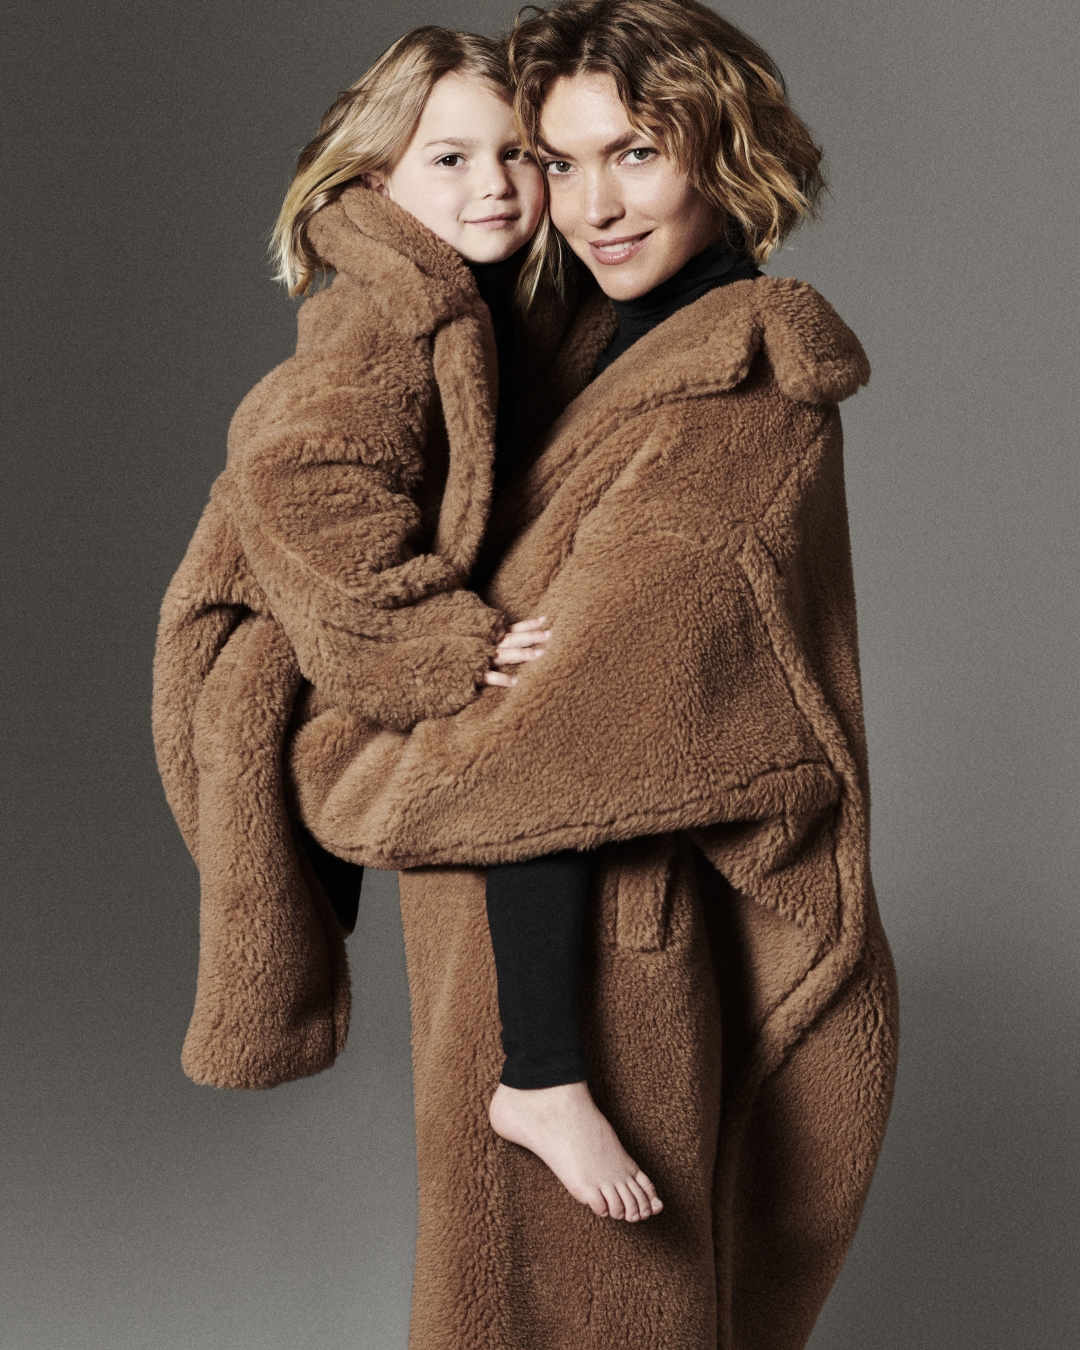 Kultni Max Mara teddy kaput slavi 10 godina i sada su izbacili modele za najmanje